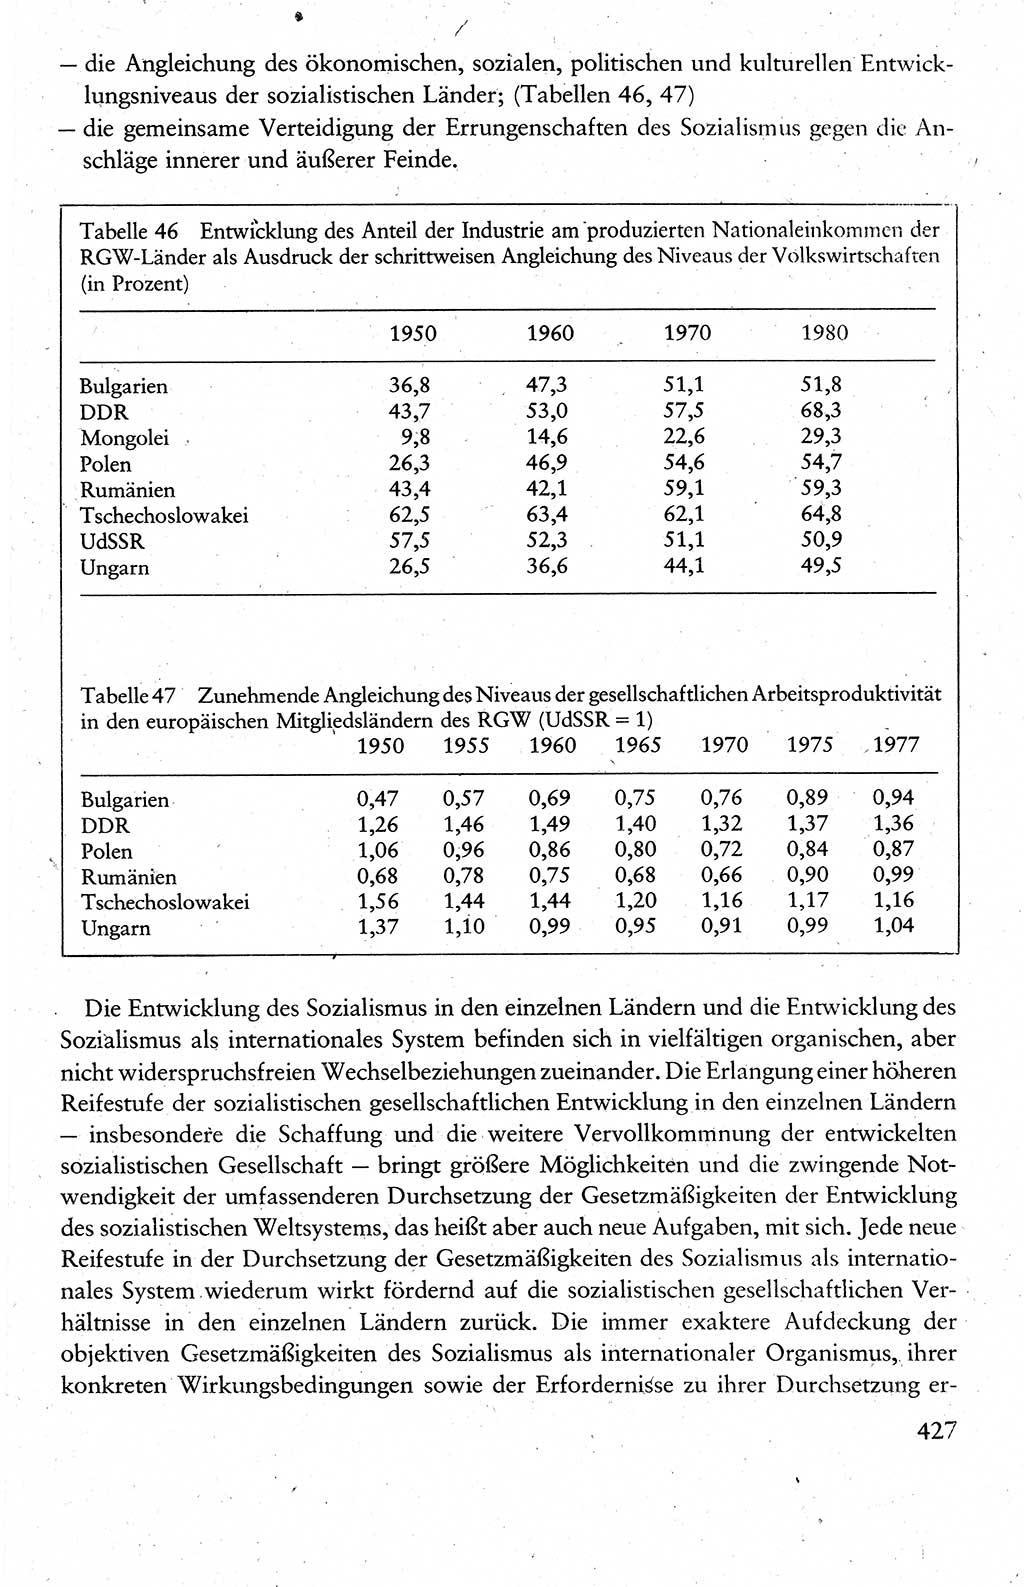 Wissenschaftlicher Kommunismus [Deutsche Demokratische Republik (DDR)], Lehrbuch für das marxistisch-leninistische Grundlagenstudium 1983, Seite 427 (Wiss. Komm. DDR Lb. 1983, S. 427)